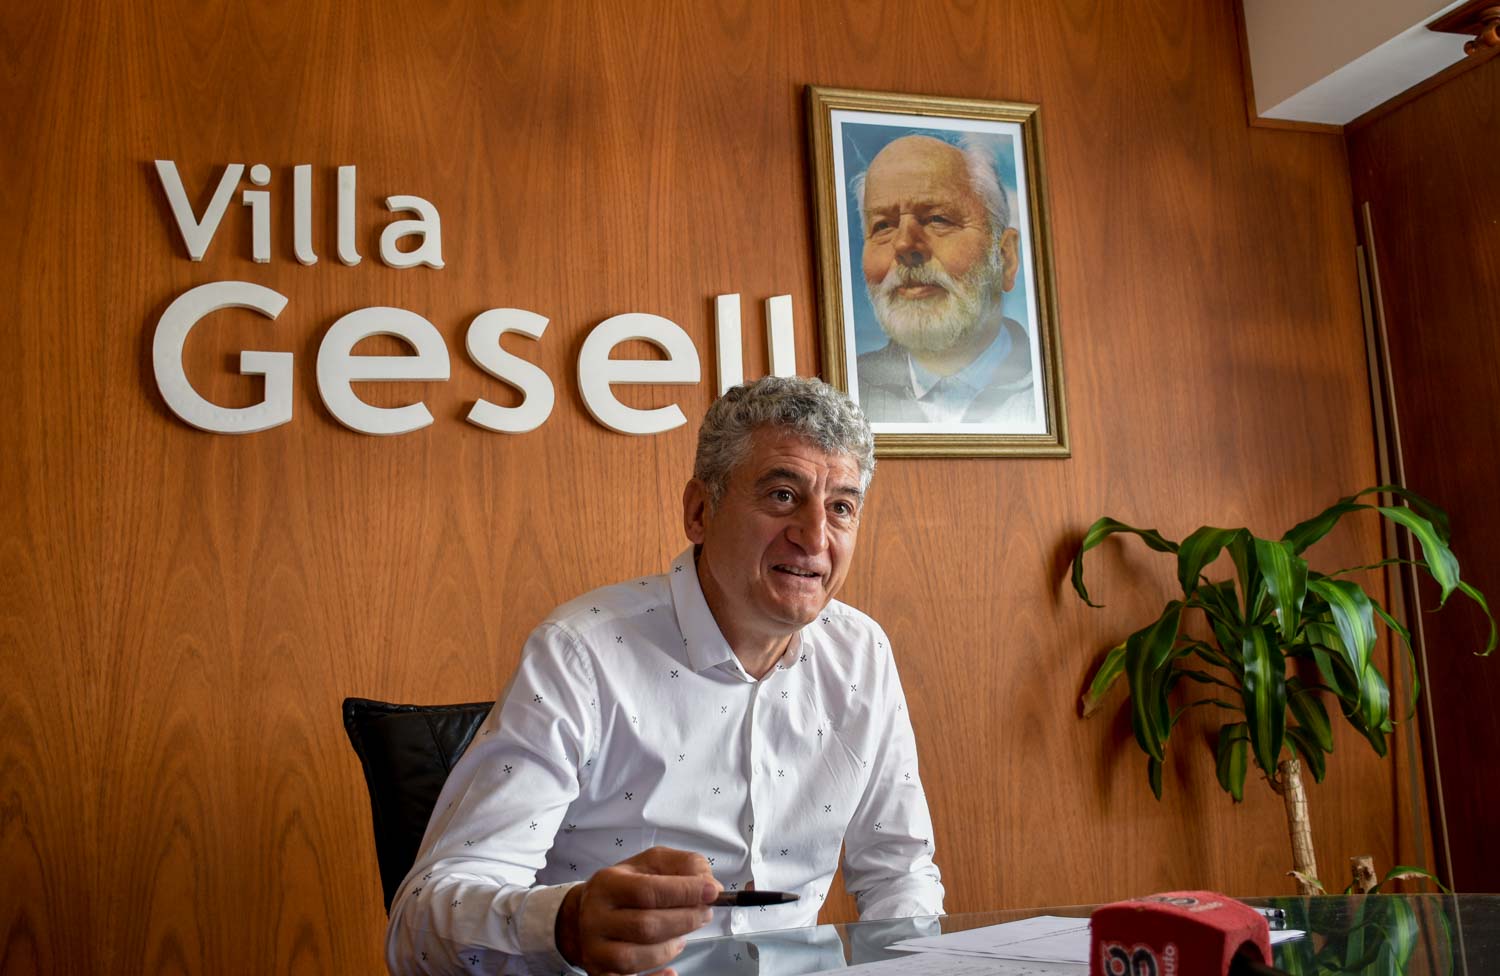 Villa Gesell: “No hay lugar para la demagogia”, dijo intendente sobre donación de salario por Coronavirus